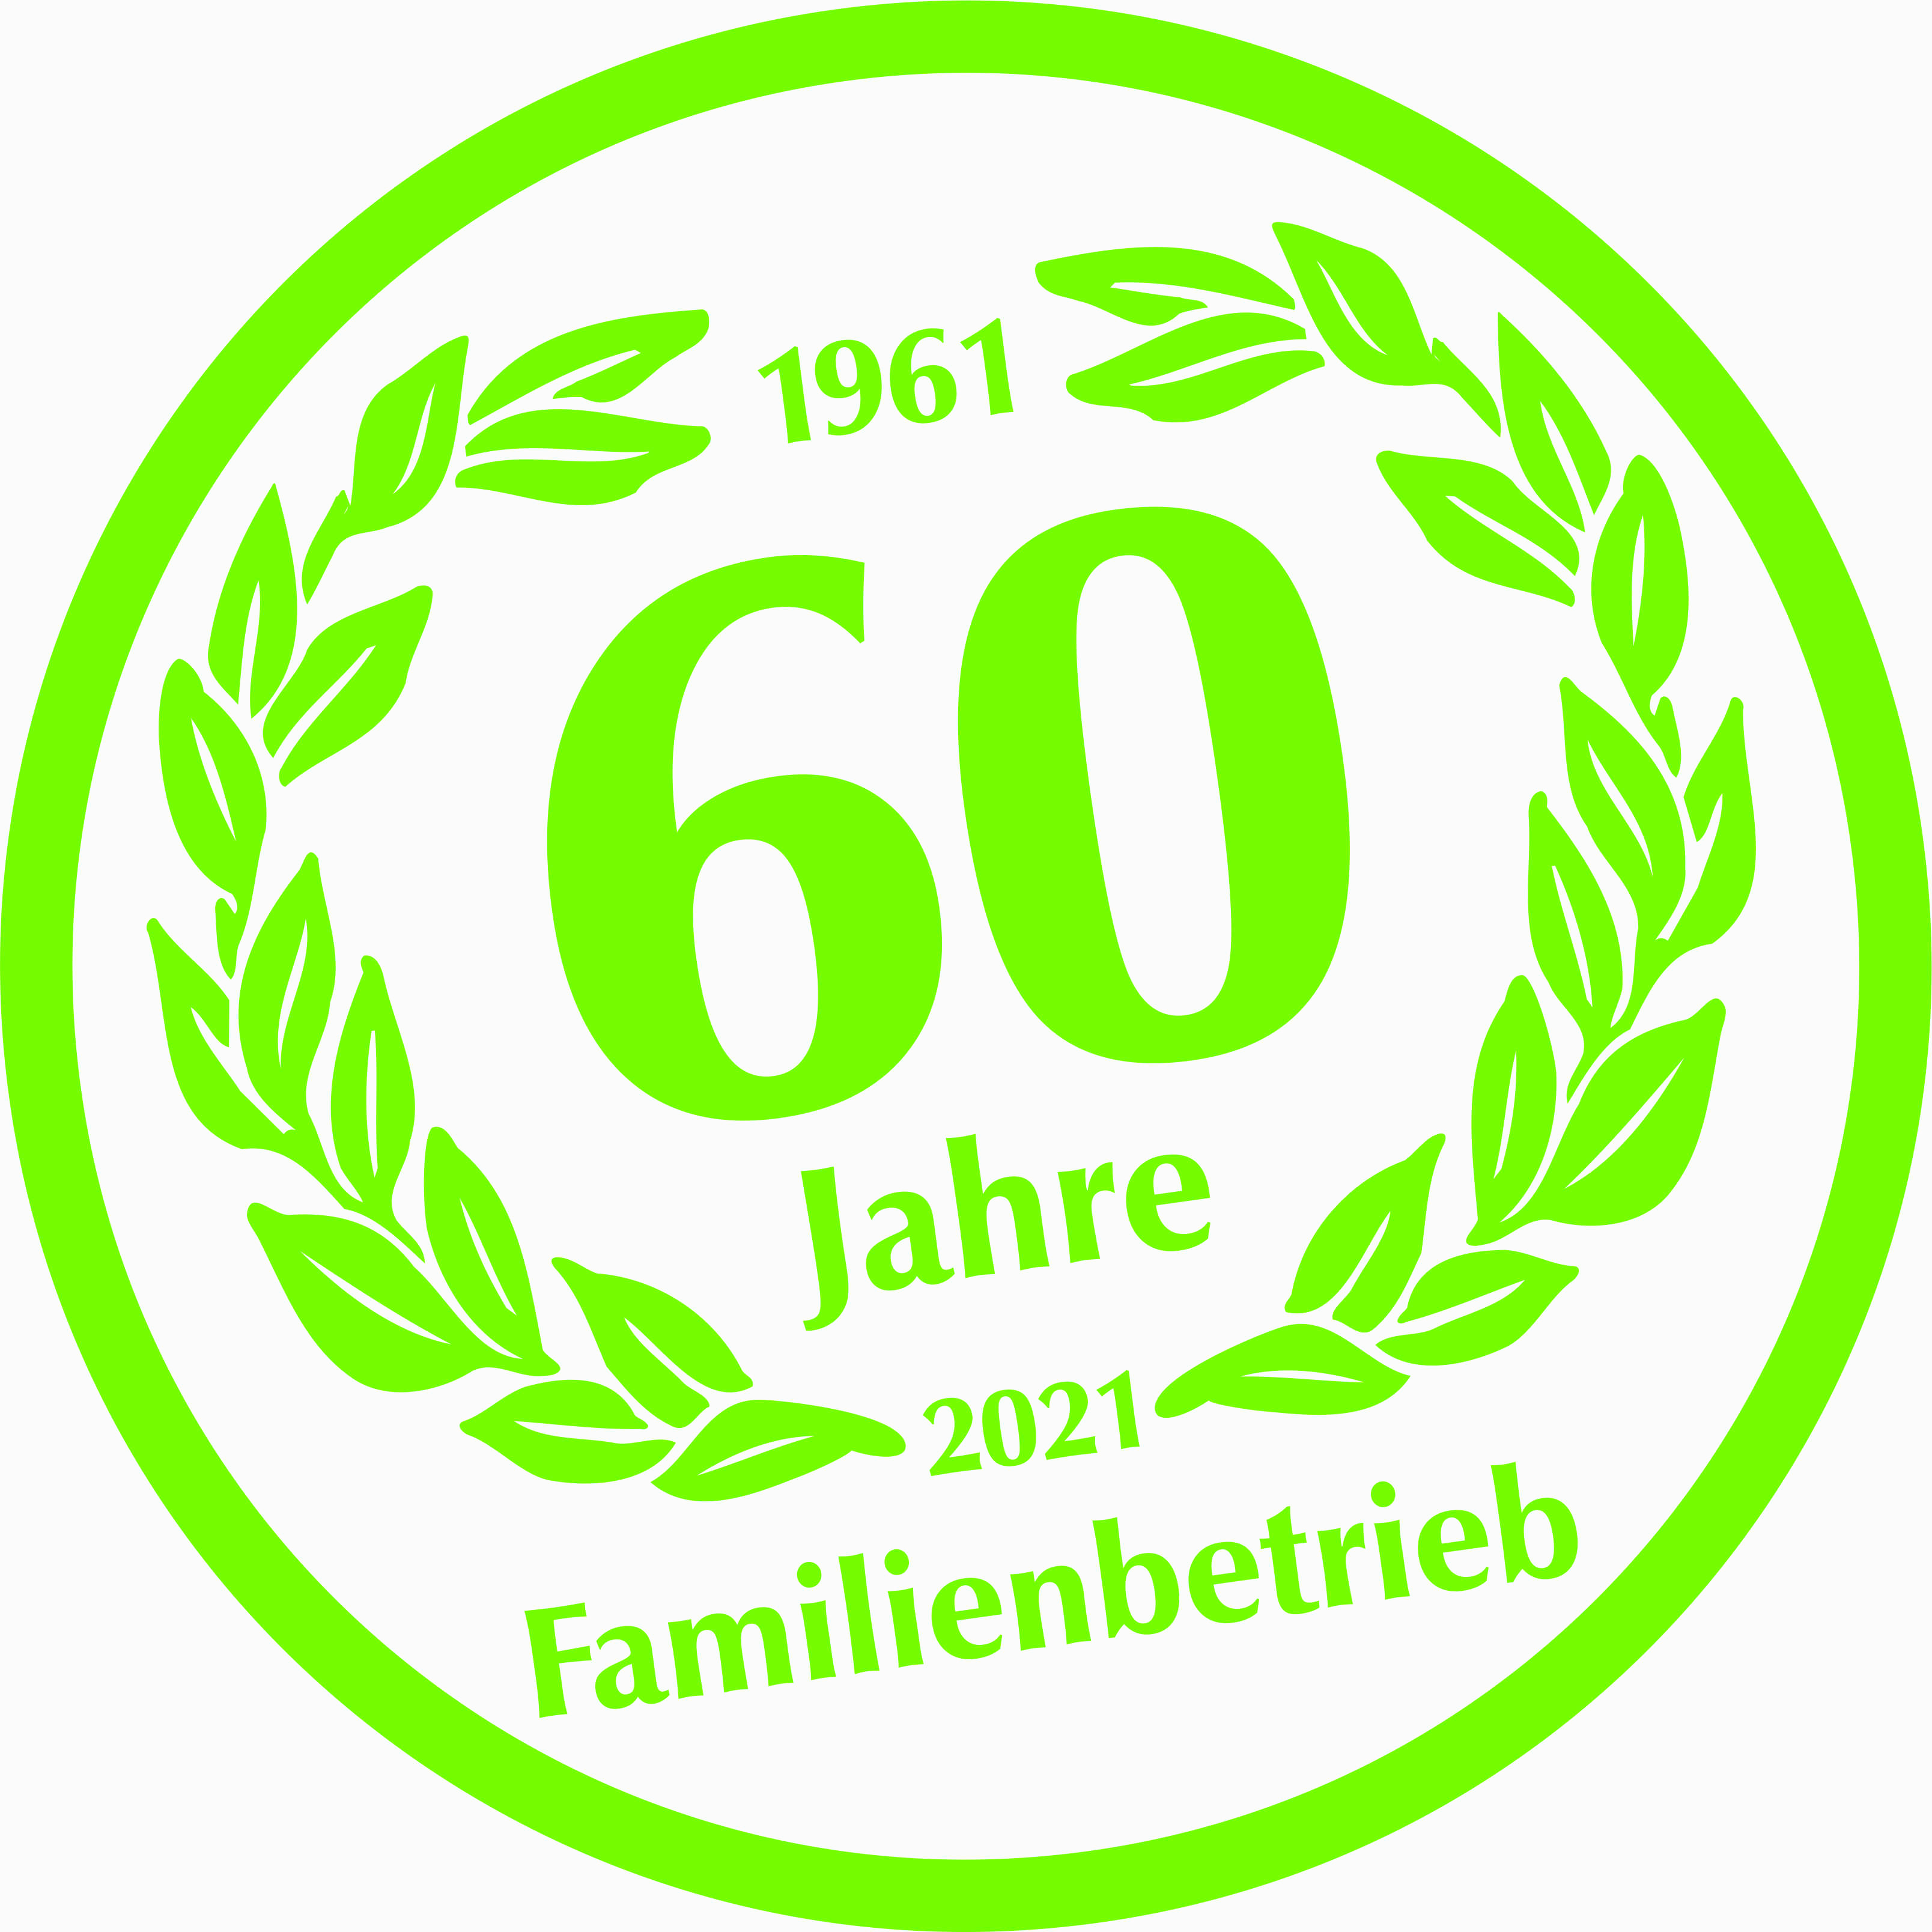 60 Jahre Familienbetrieb